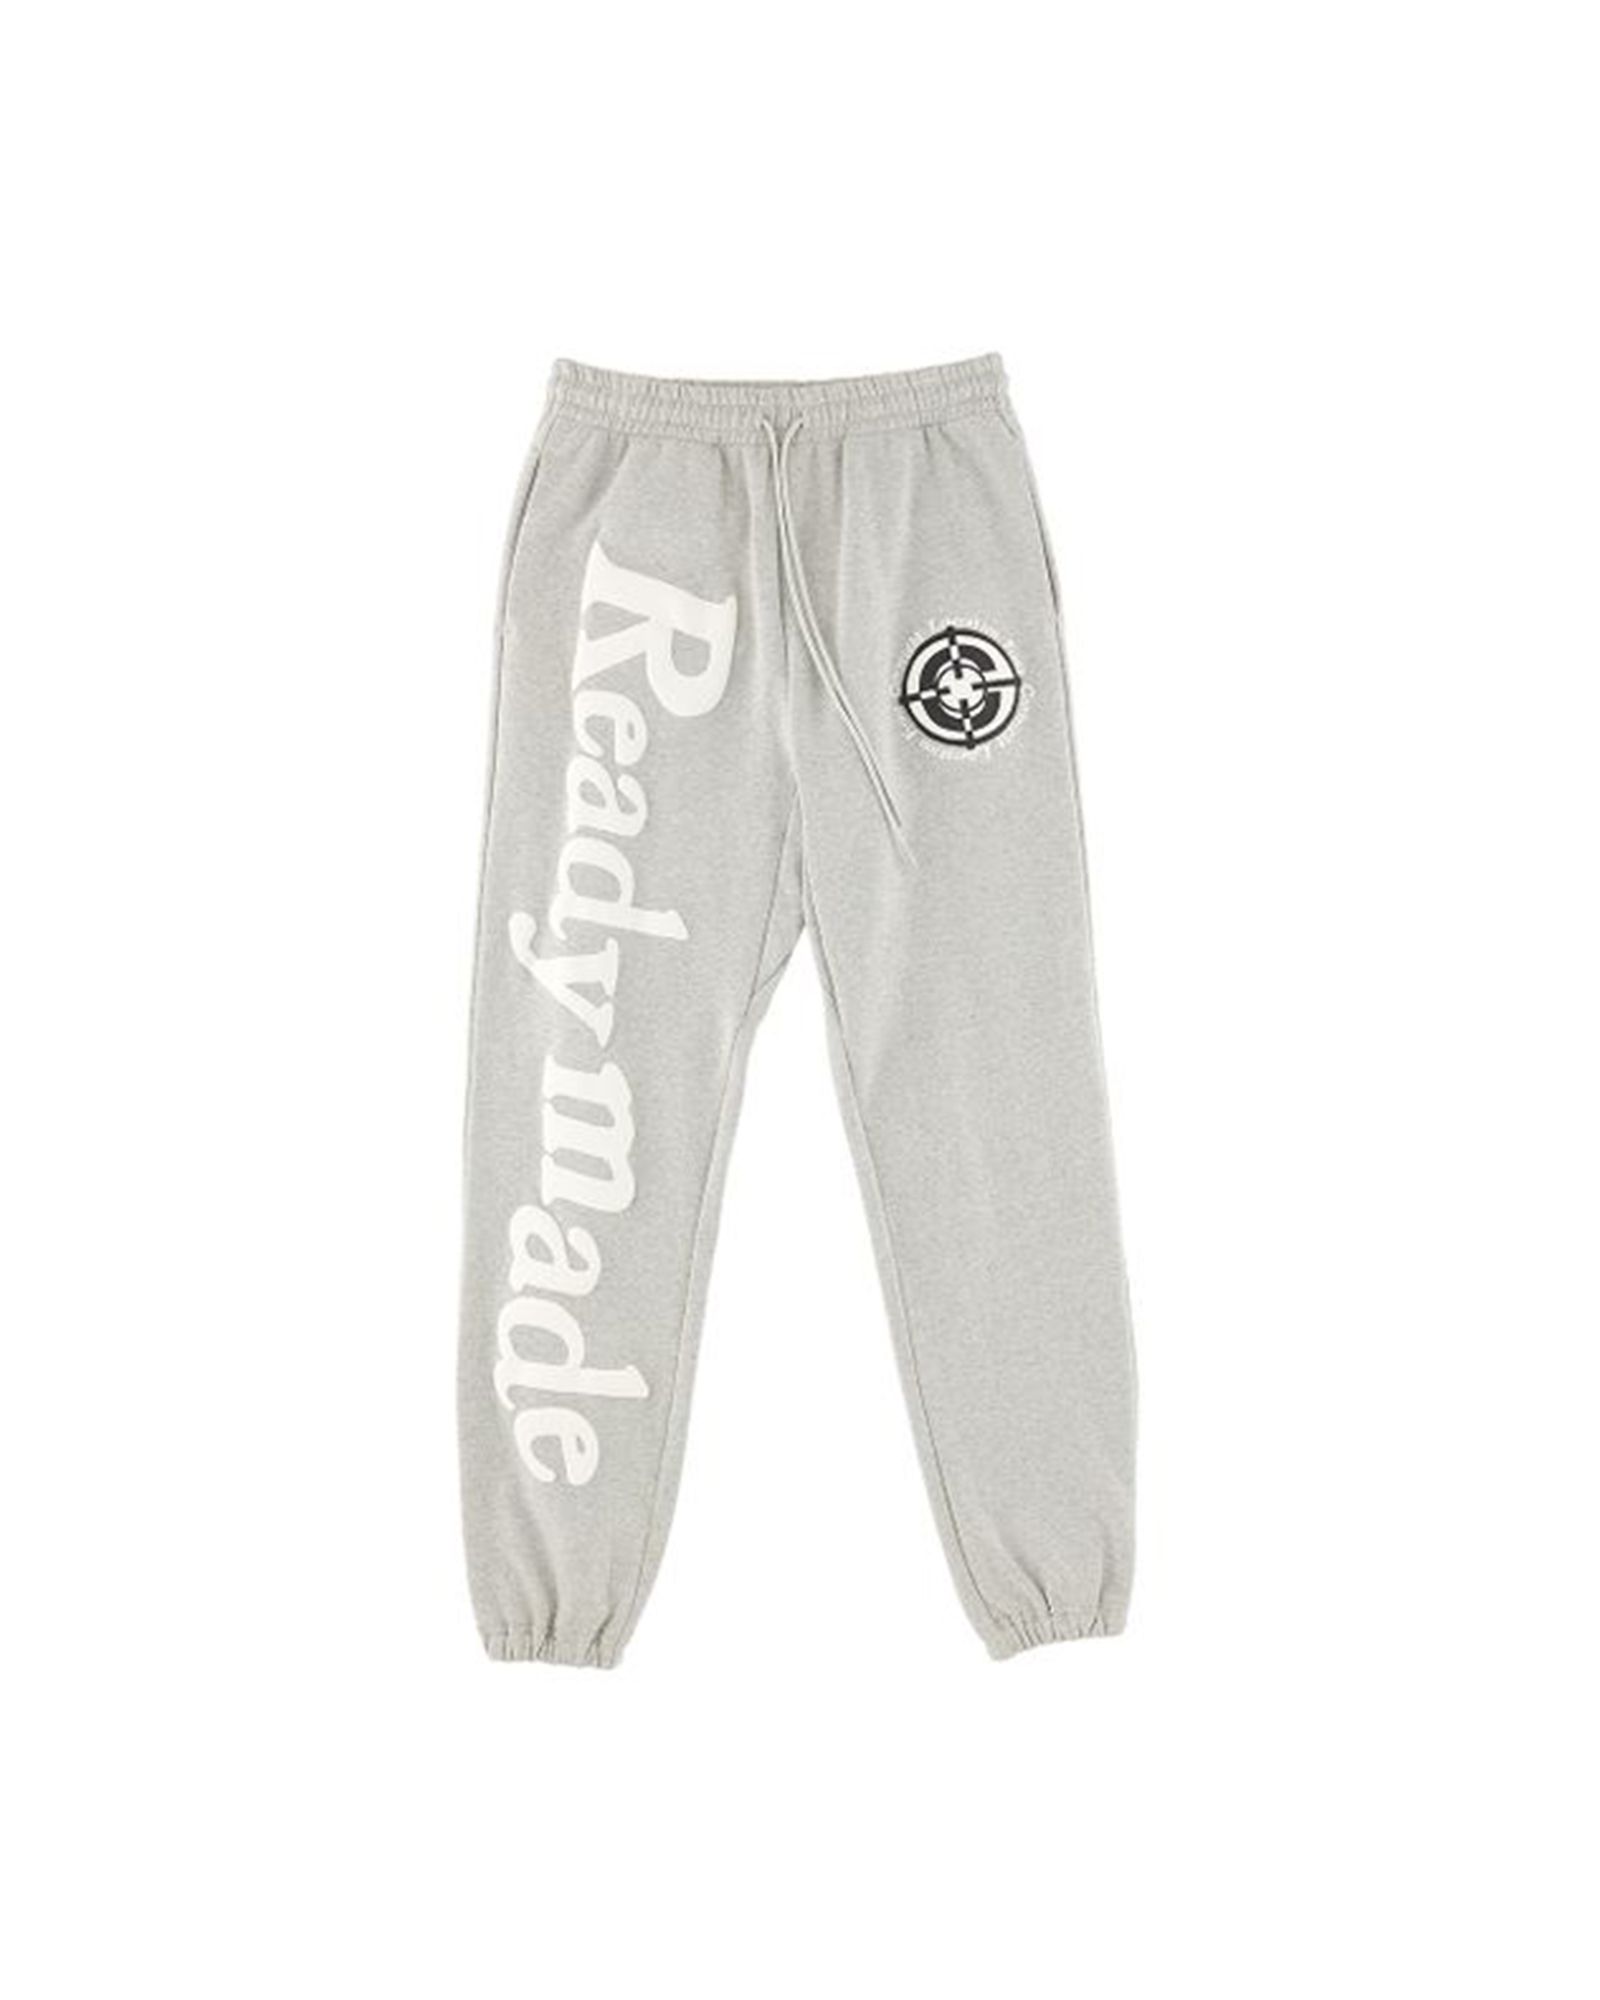 レディメイド/Rm sweat pants/スウェットパンツ/Gray - S